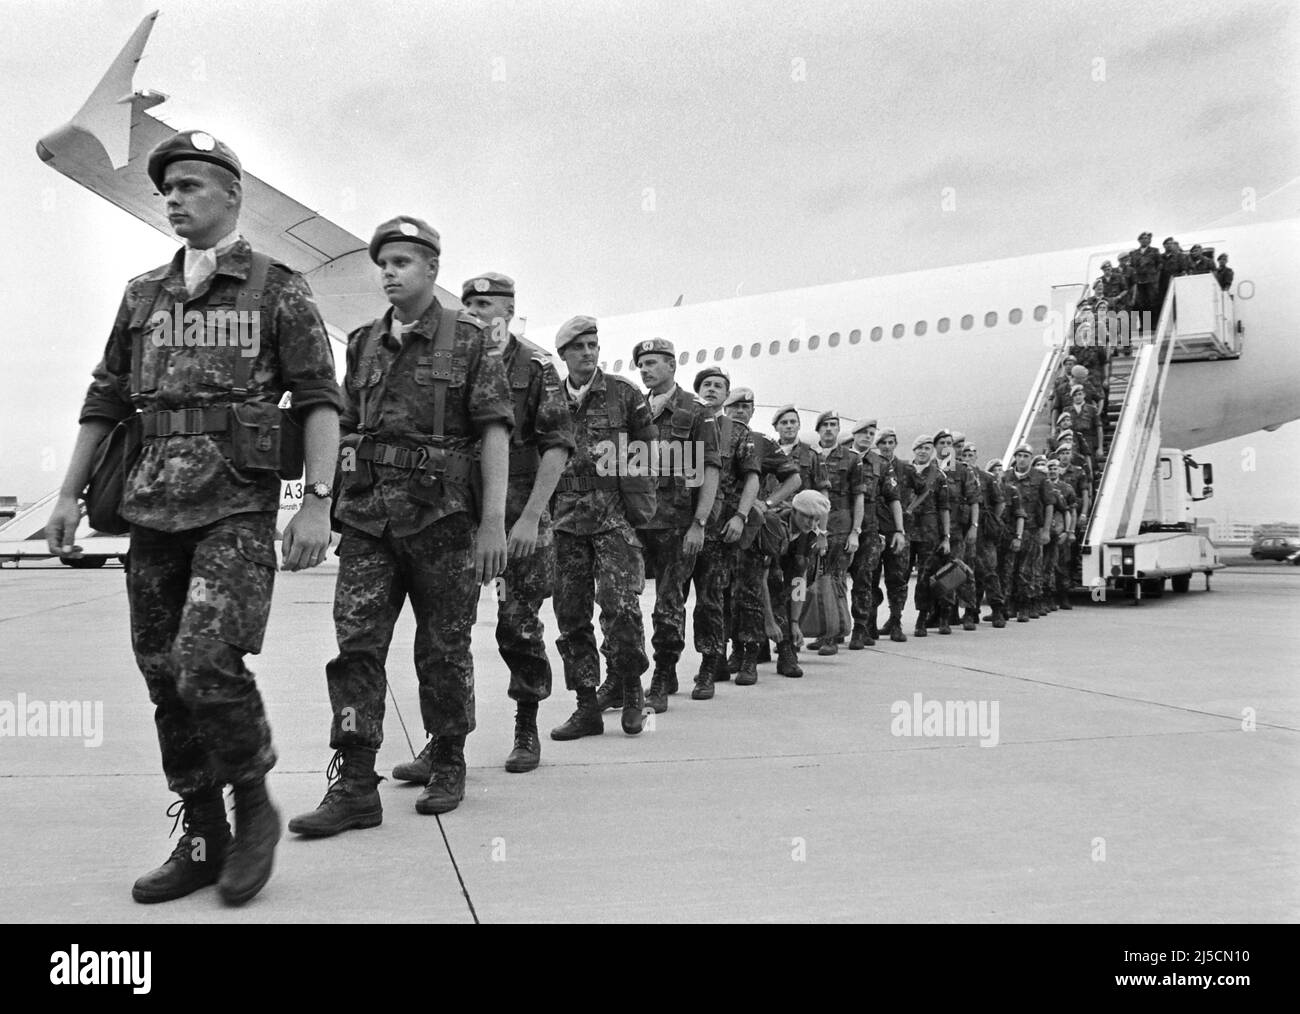 Flughafen Köln/Bonn, DEU, 15.03.1994 - Blauhelm-Soldaten der Bundeswehr kehren aus Somalia zurück. Die Vereinten Nationen haben im Rahmen der UNOSOM II-Mission Blauhelmsoldaten nach Somalia entsandt. Das UNOSOM-II-Mandat war der erste bewaffnete Auslandseinsatz der Bundeswehr. Das deutsche Kontingent beendete zusammen mit anderen Truppen seinen Einsatz in Somalia im März 1994. [Automatisierte Übersetzung] Stockfoto